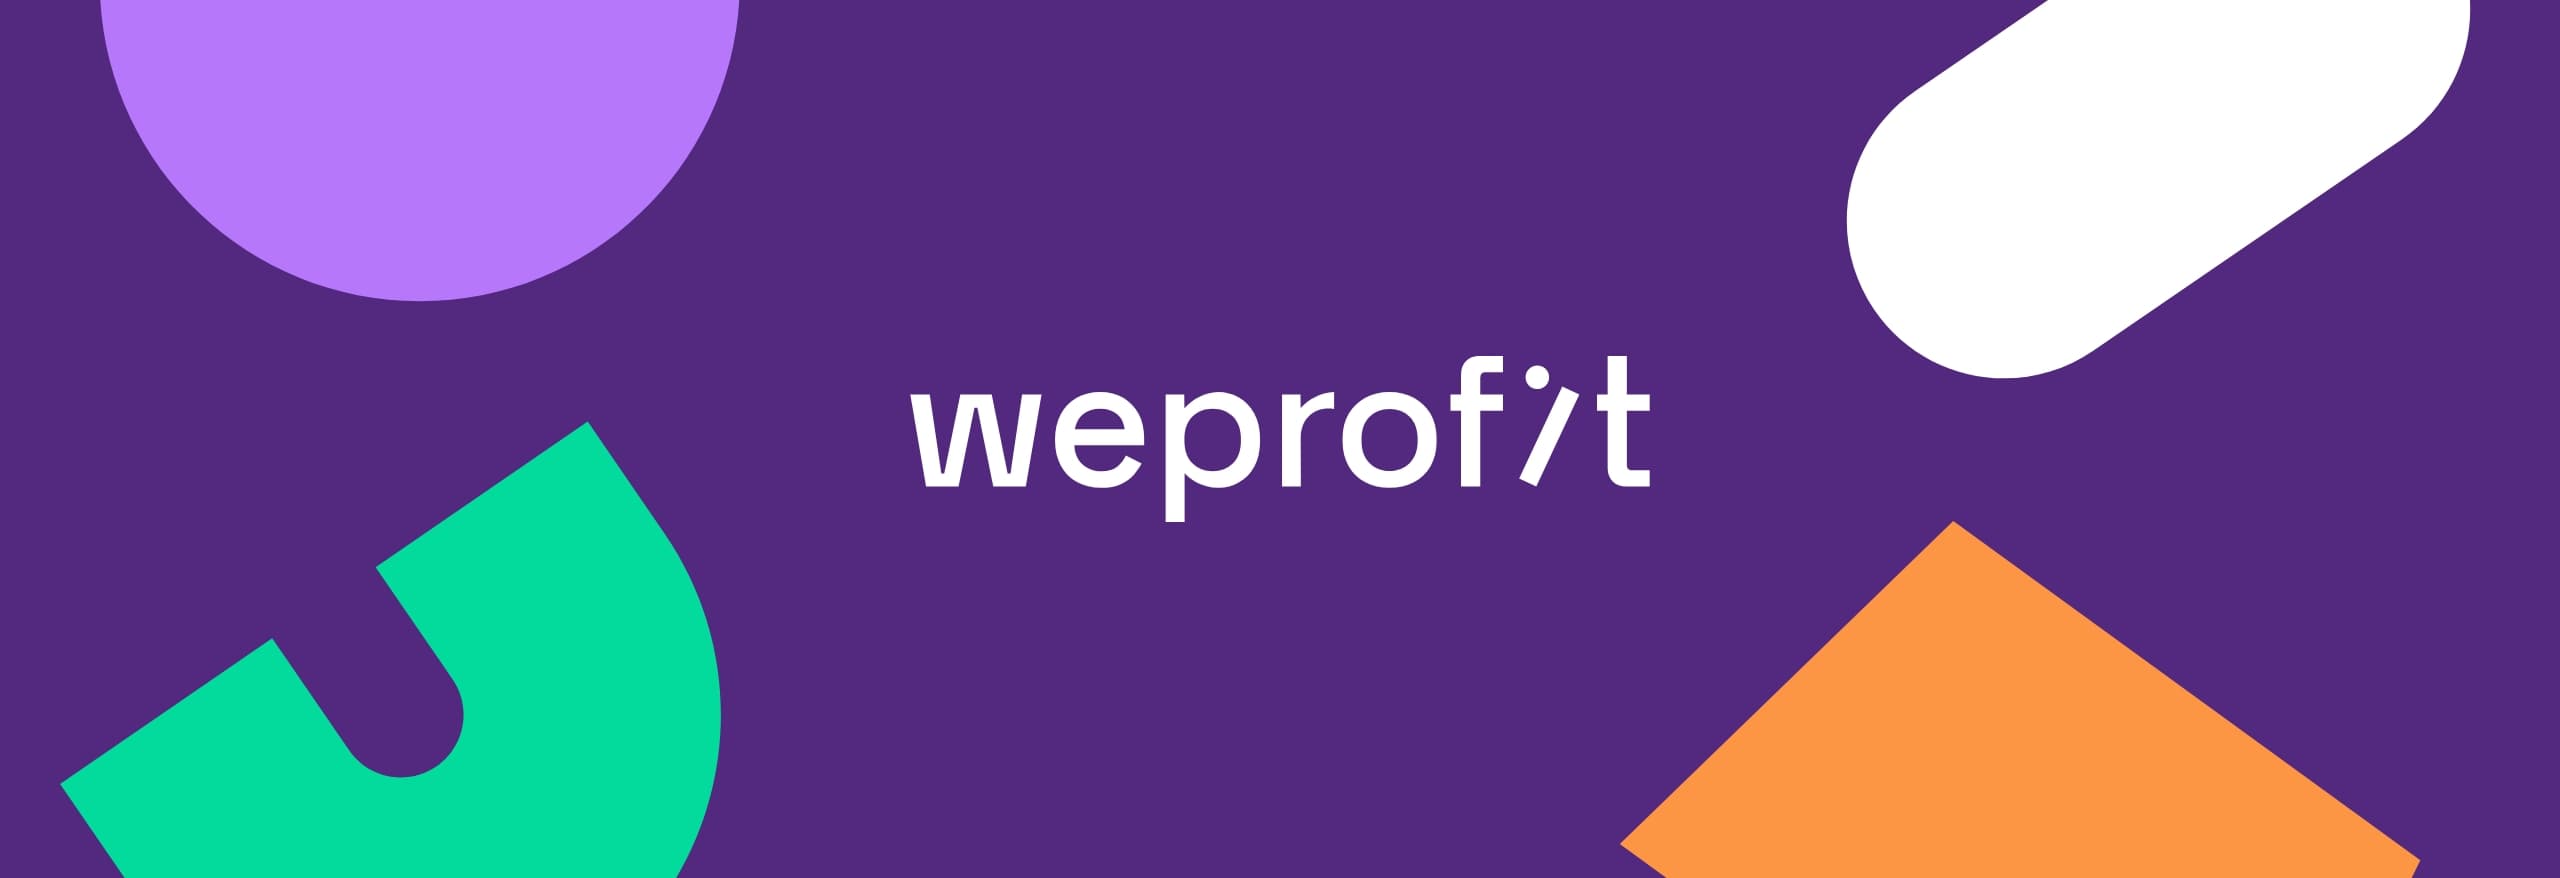 Concept Portfolio Weprofit website cover